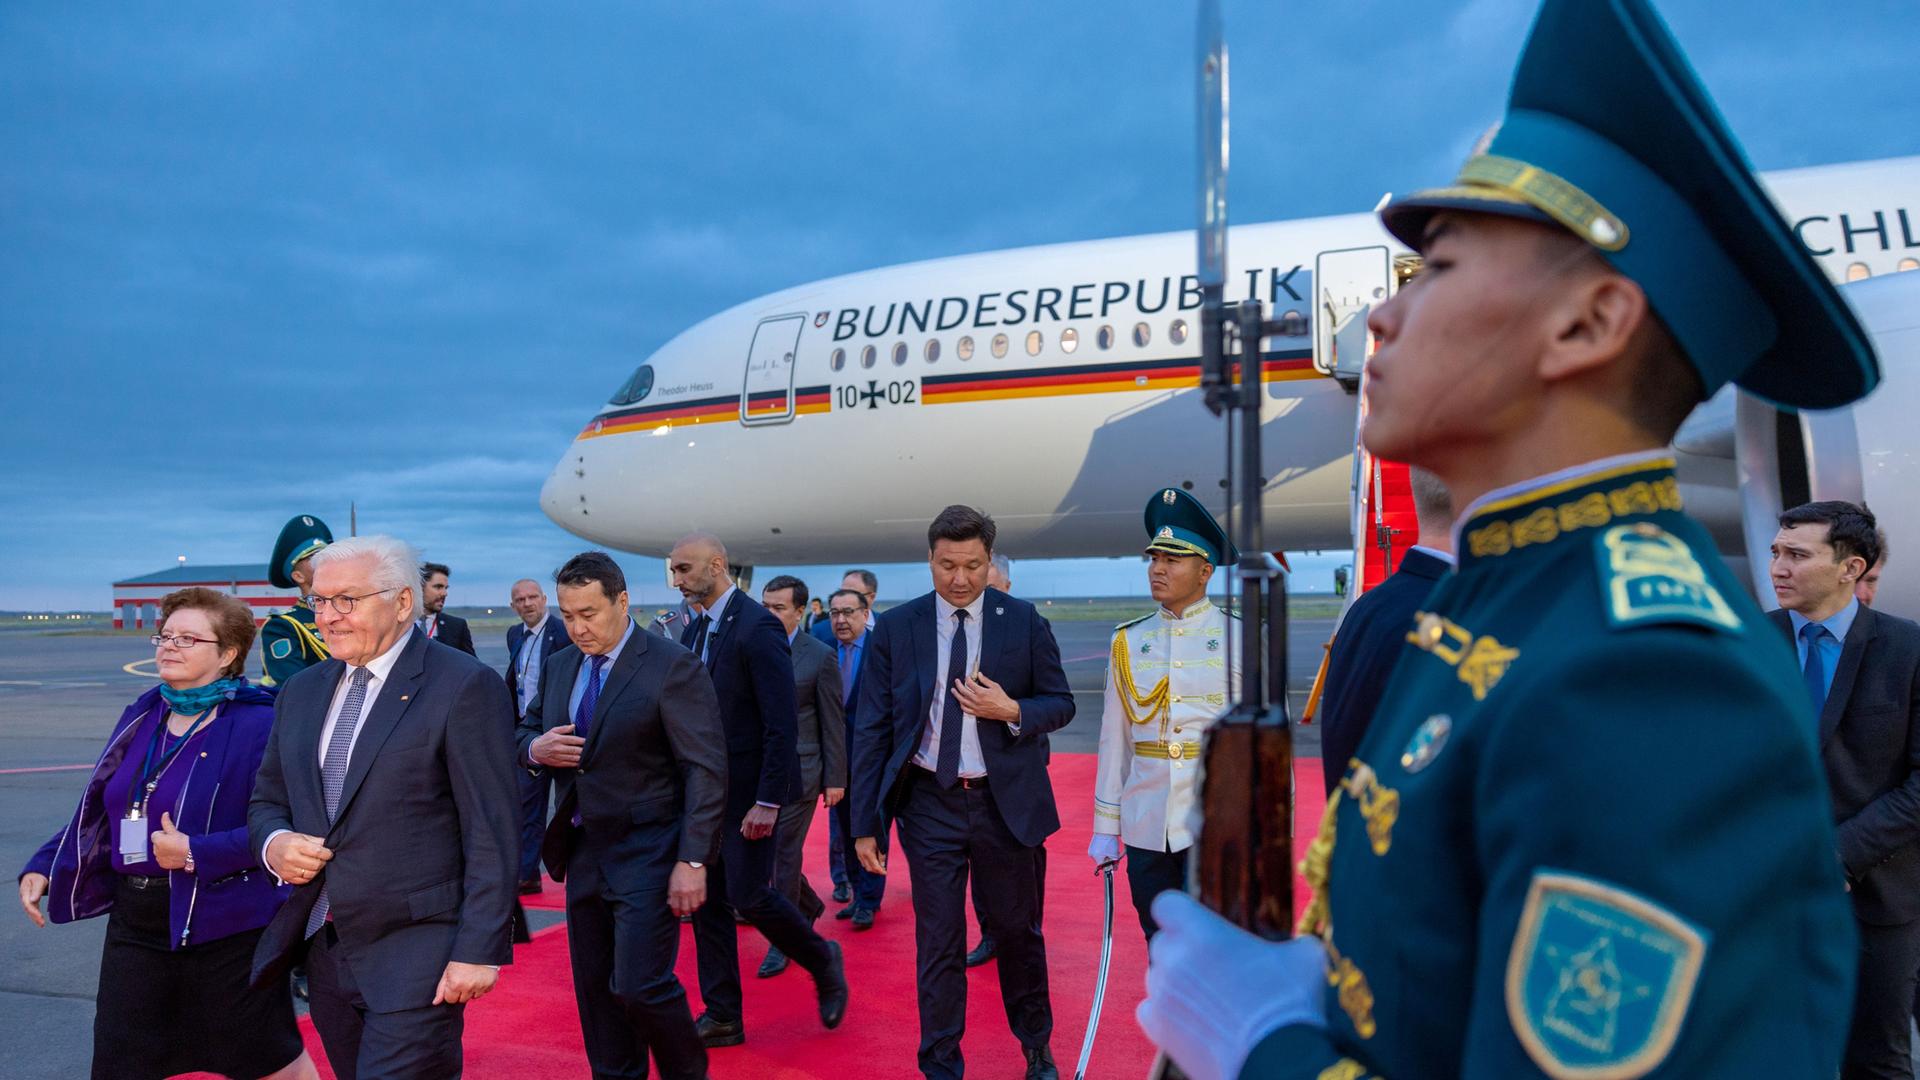 Bundespräsident Frank-Walter Steinmeier am Flughafen von Astana in Kasachstan. Im Hintergrund ist das Flugzeug mit der Aufschrift "Bundesrepublik Deutschland" zu sehen.